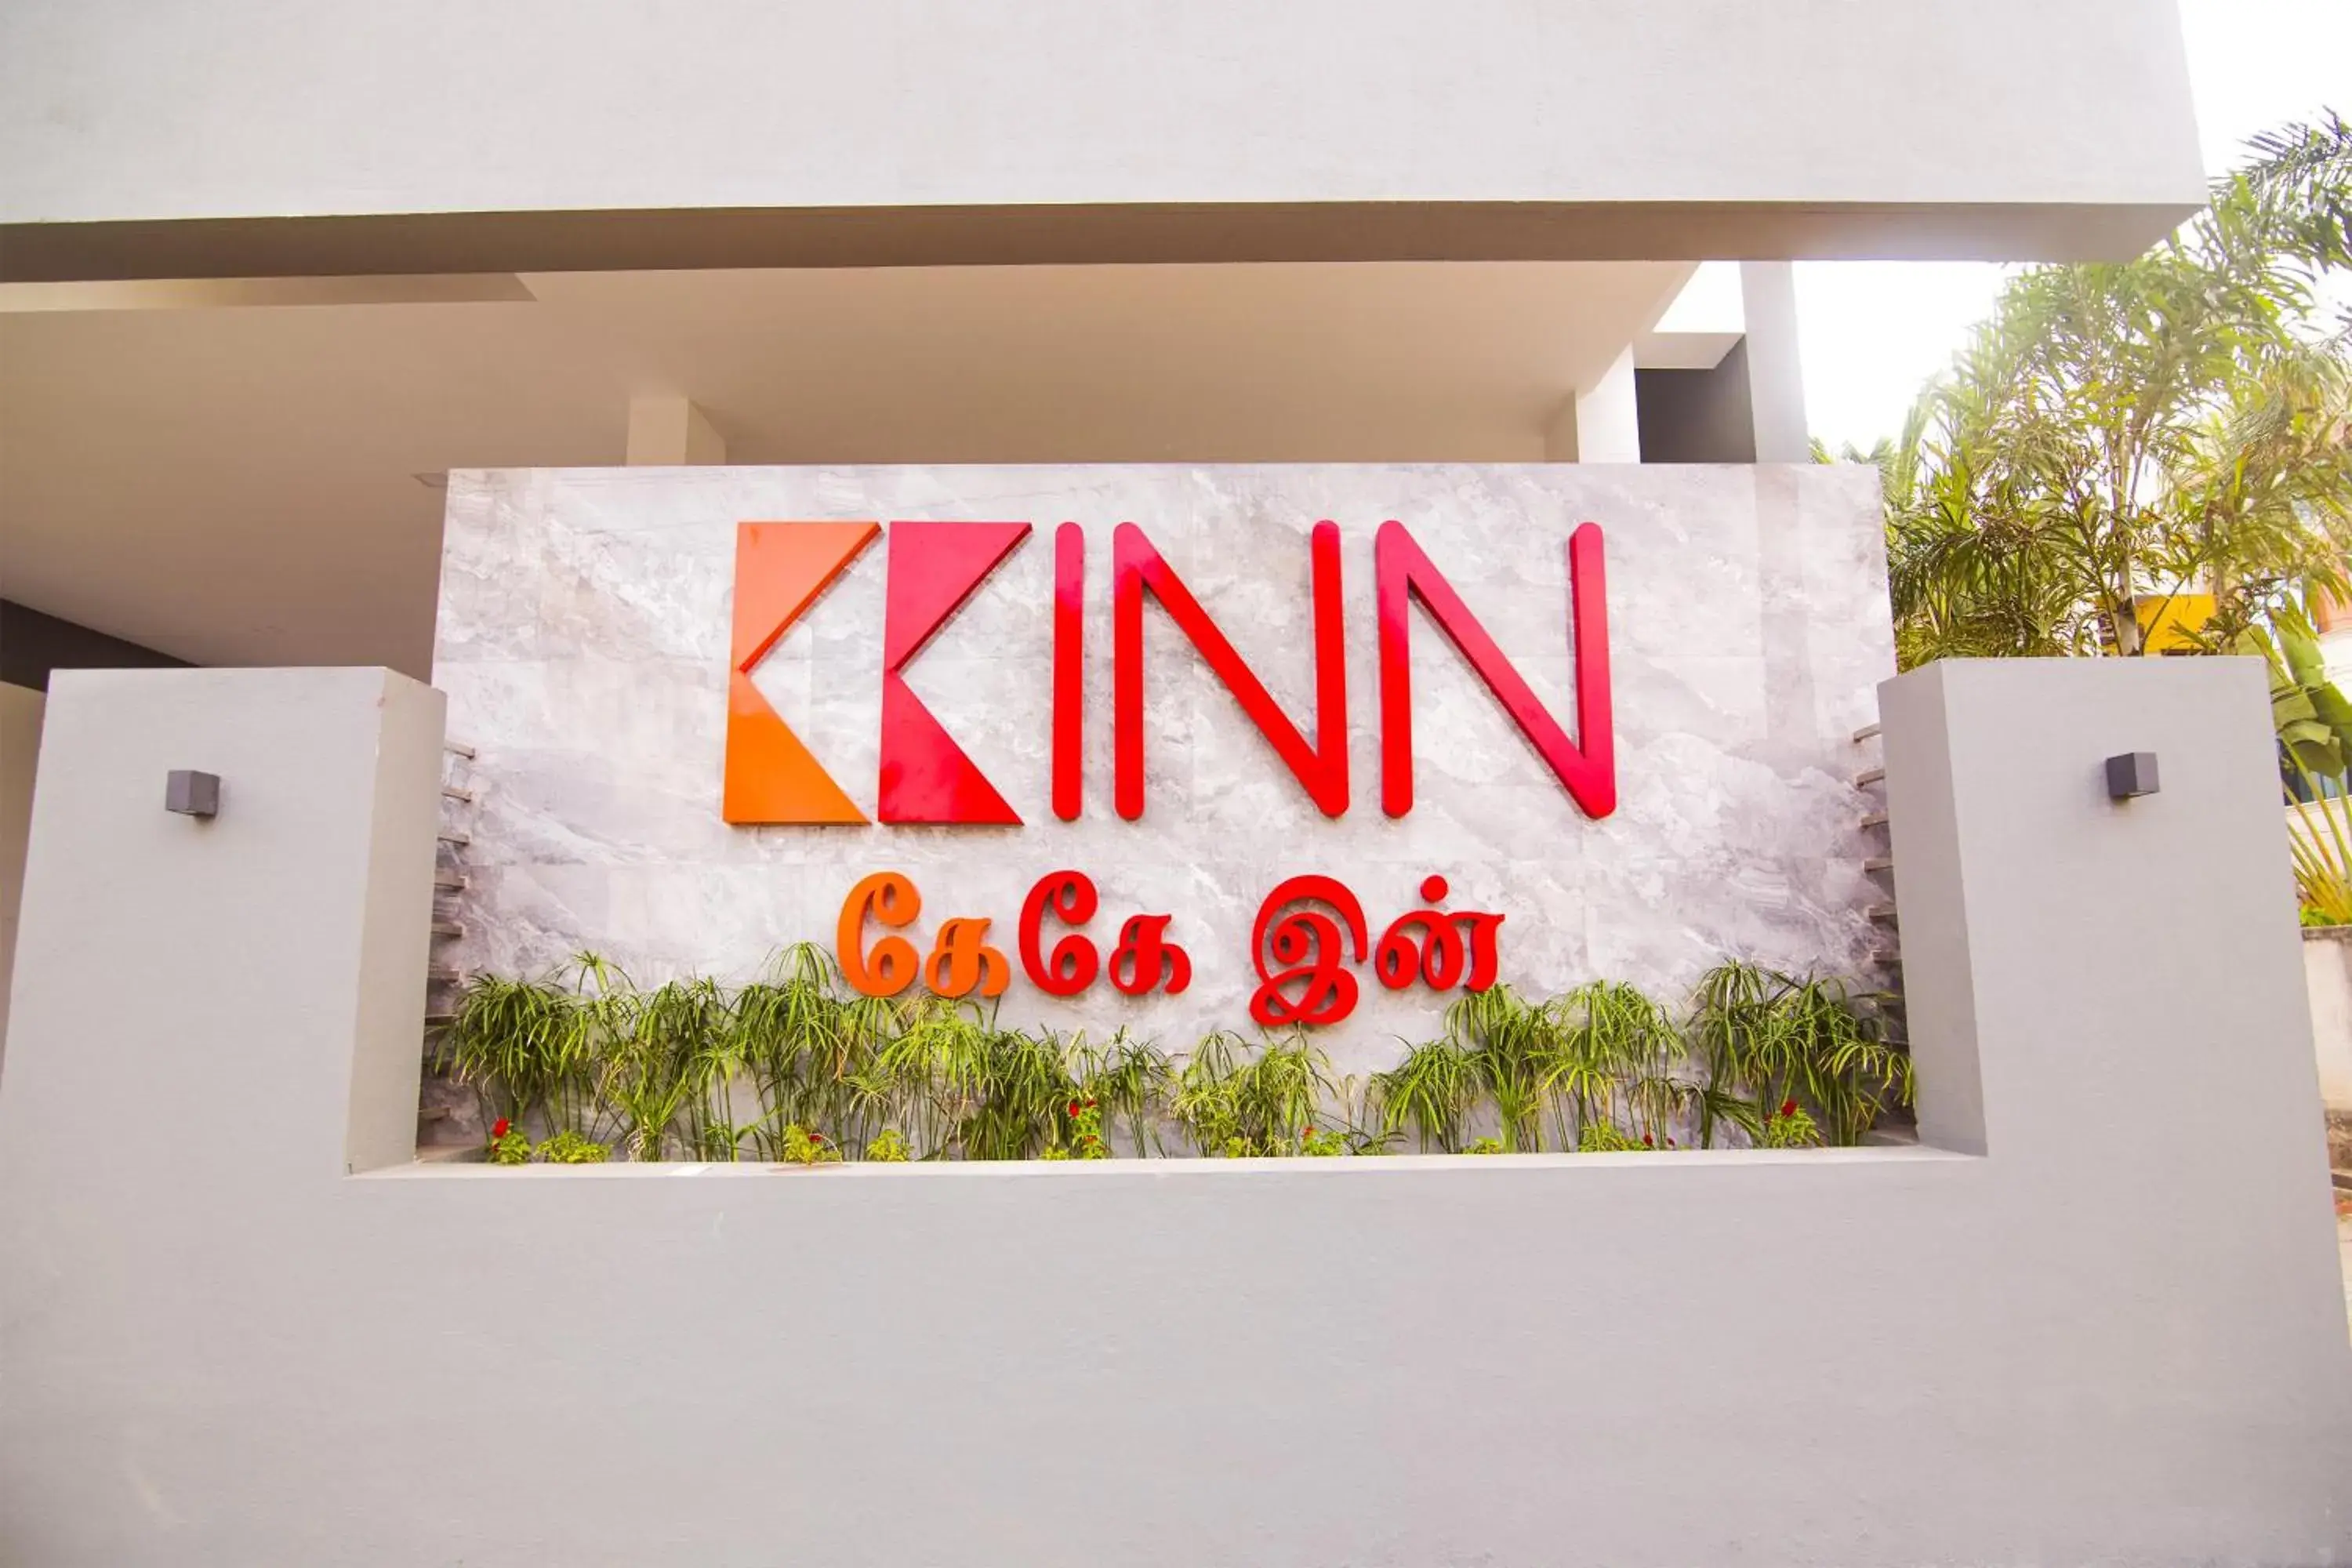 Property logo or sign in KK Inn